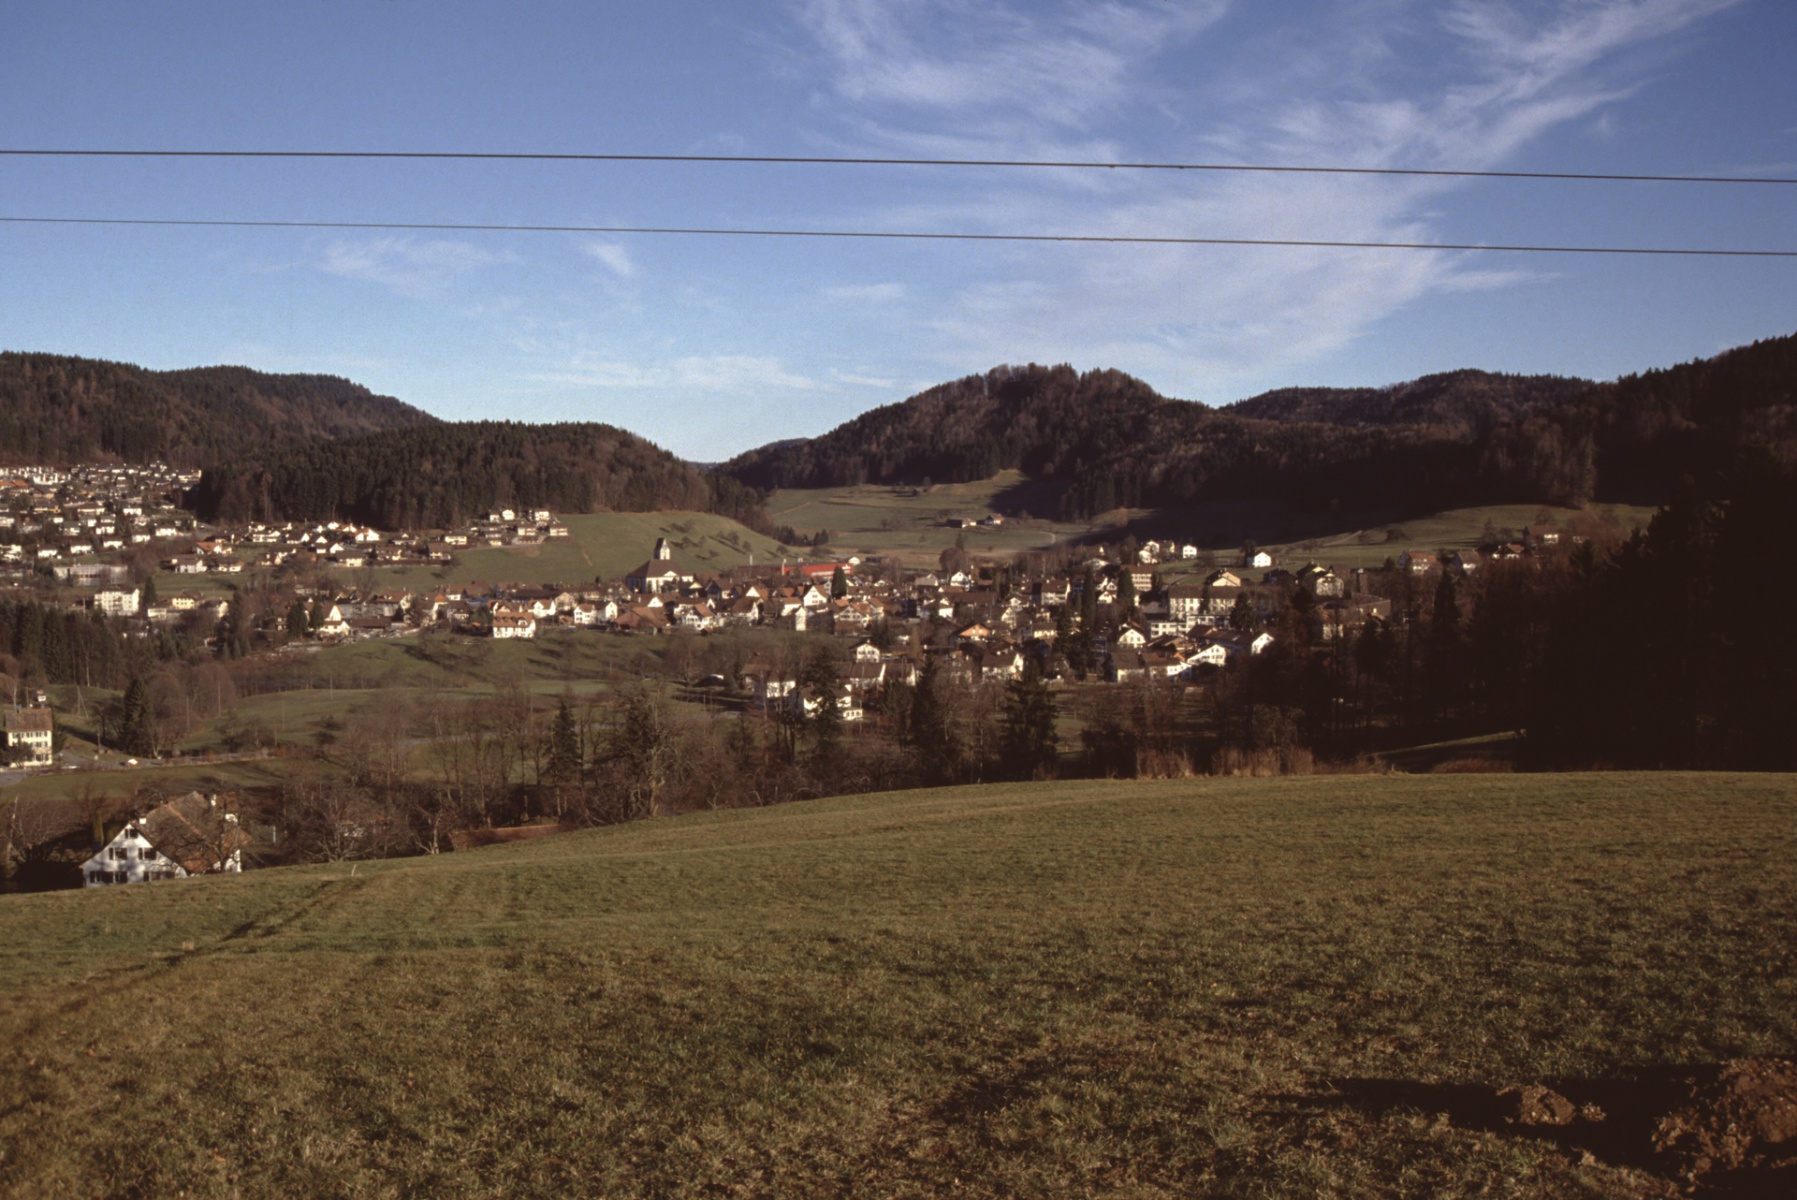 Oberhalb Breitenmatt, Blick auf das Dorf Rtg Bussenthal